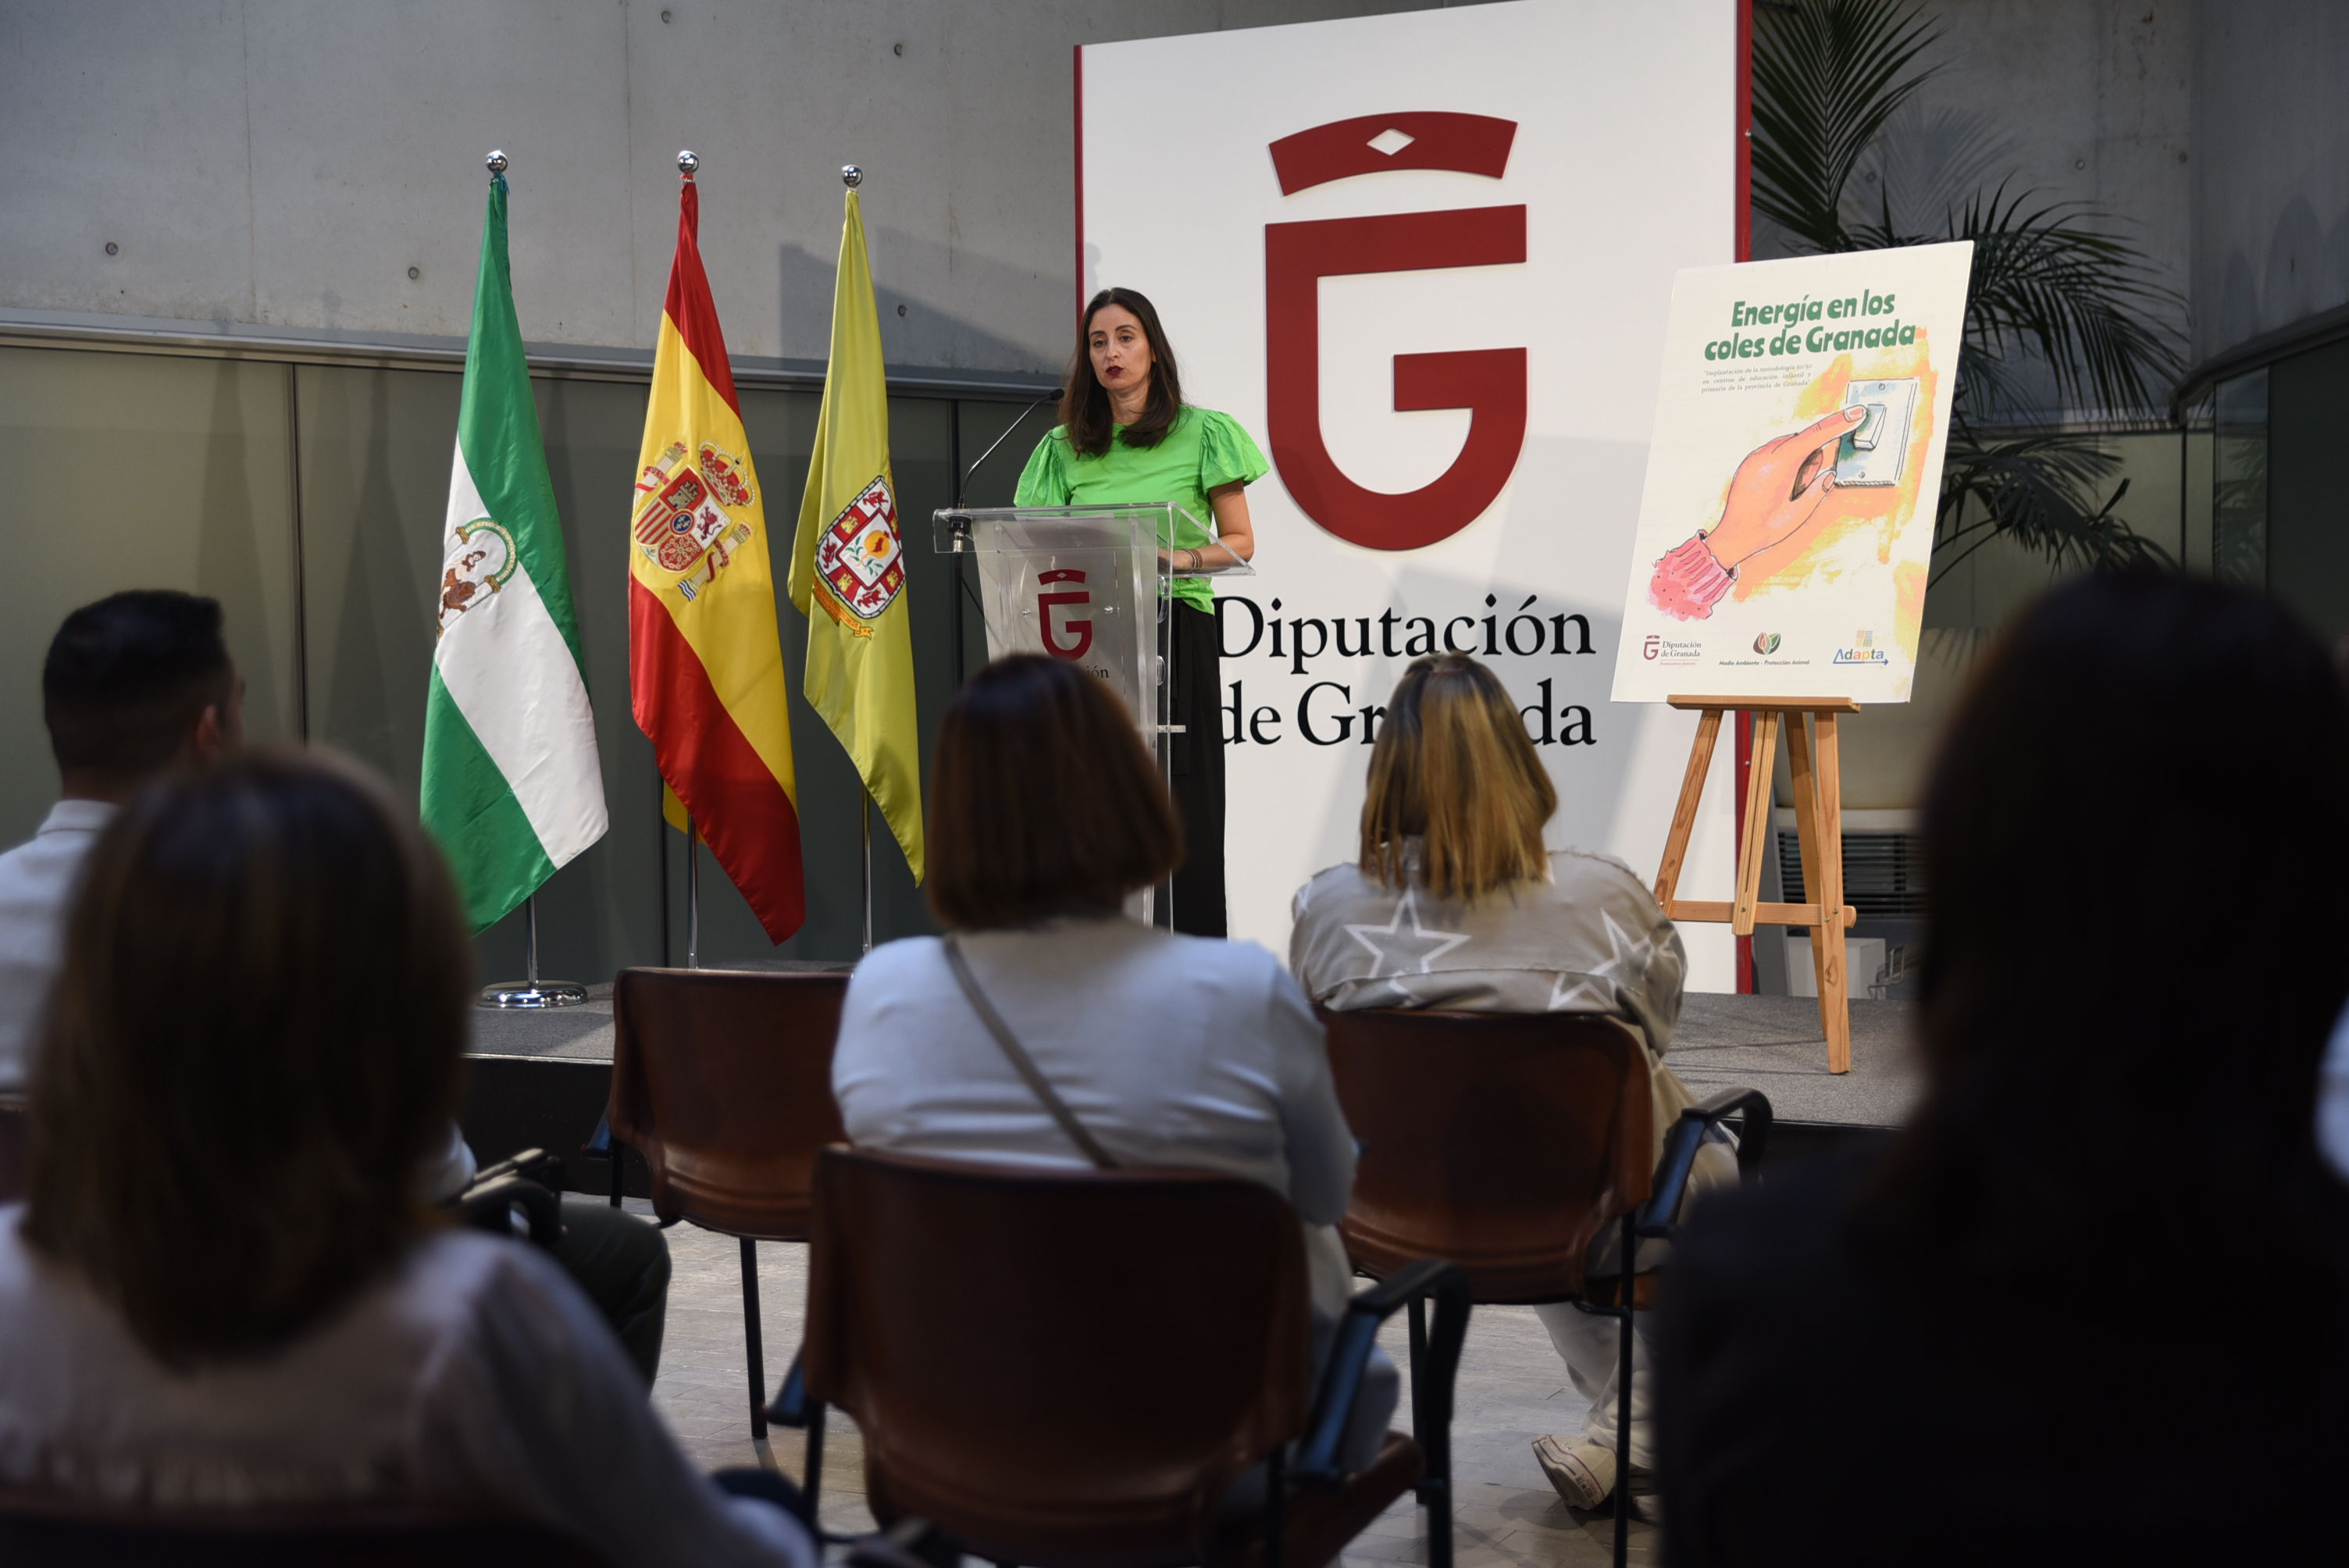 Ocho centros educativos se beneficiarán del programa “Energía en los coles de Granada”